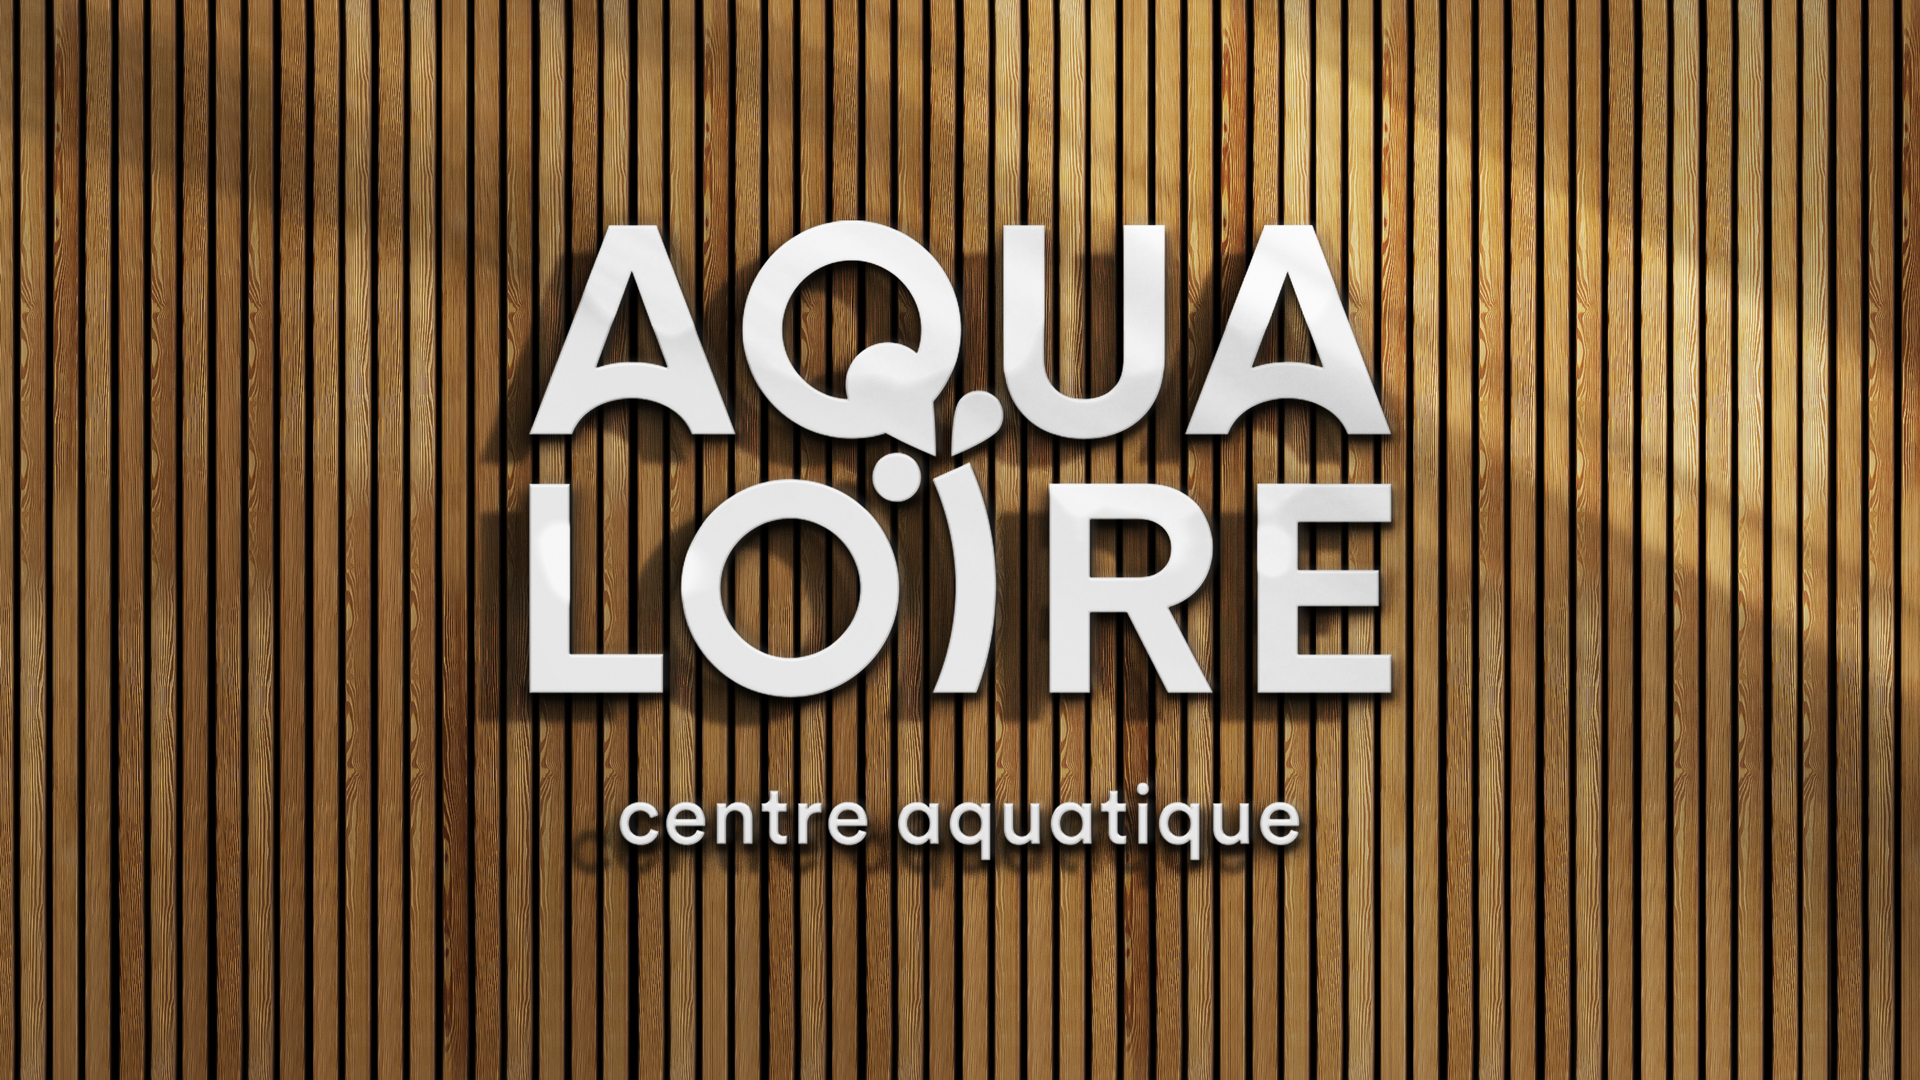 aqualoire mauges sur loire Logo de complexe sportif  identite visuelle signaletique bois